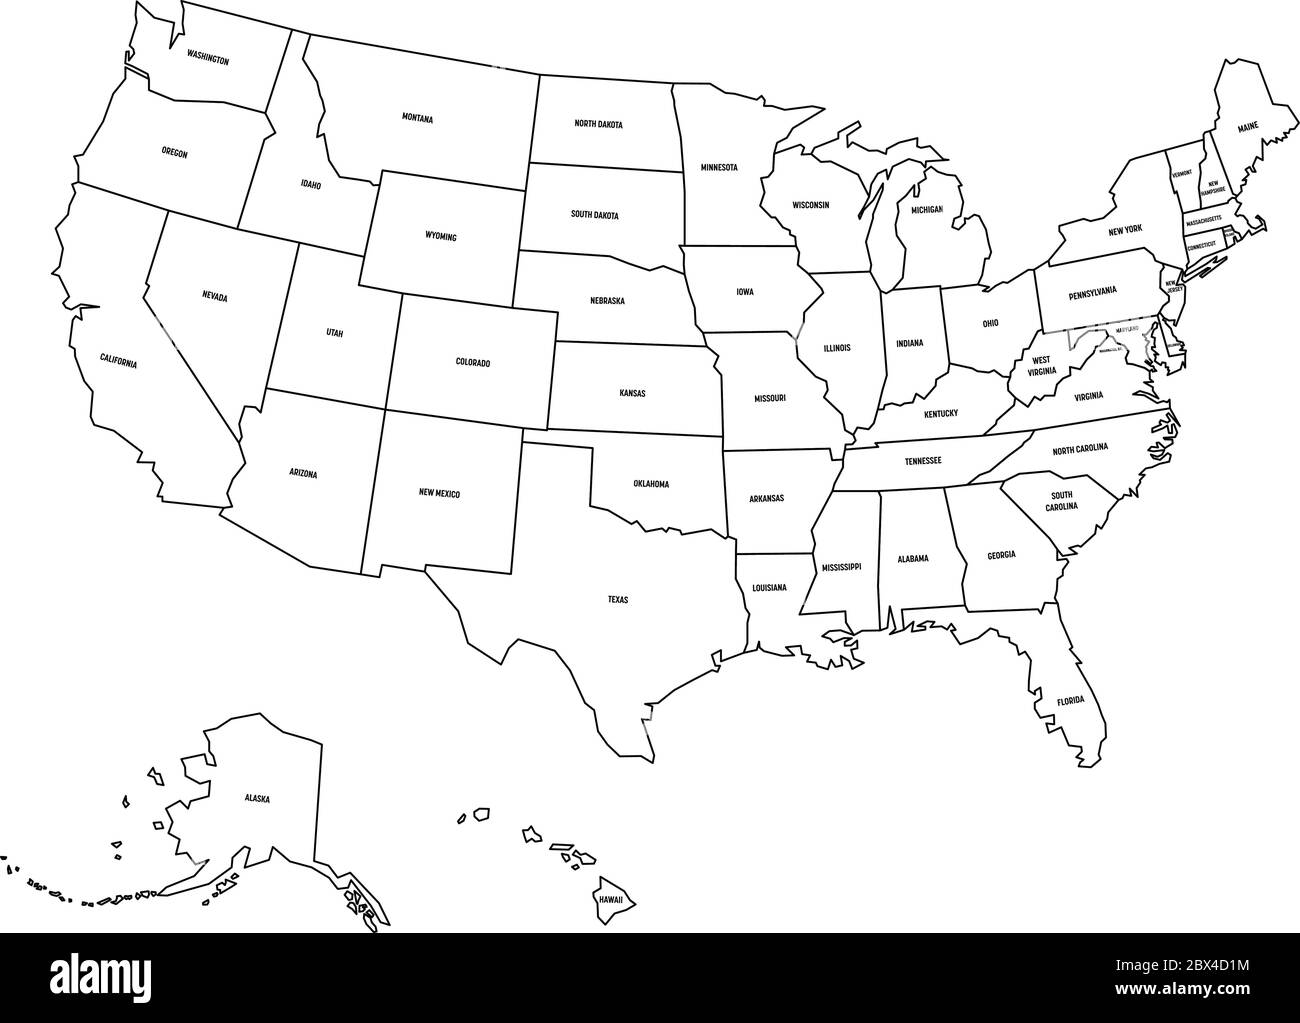 Mappa politica degli Stati Uniti d'America, USA. Semplice mappa vettoriale a contorno nero piatto con etichette nere su sfondo bianco. Illustrazione Vettoriale